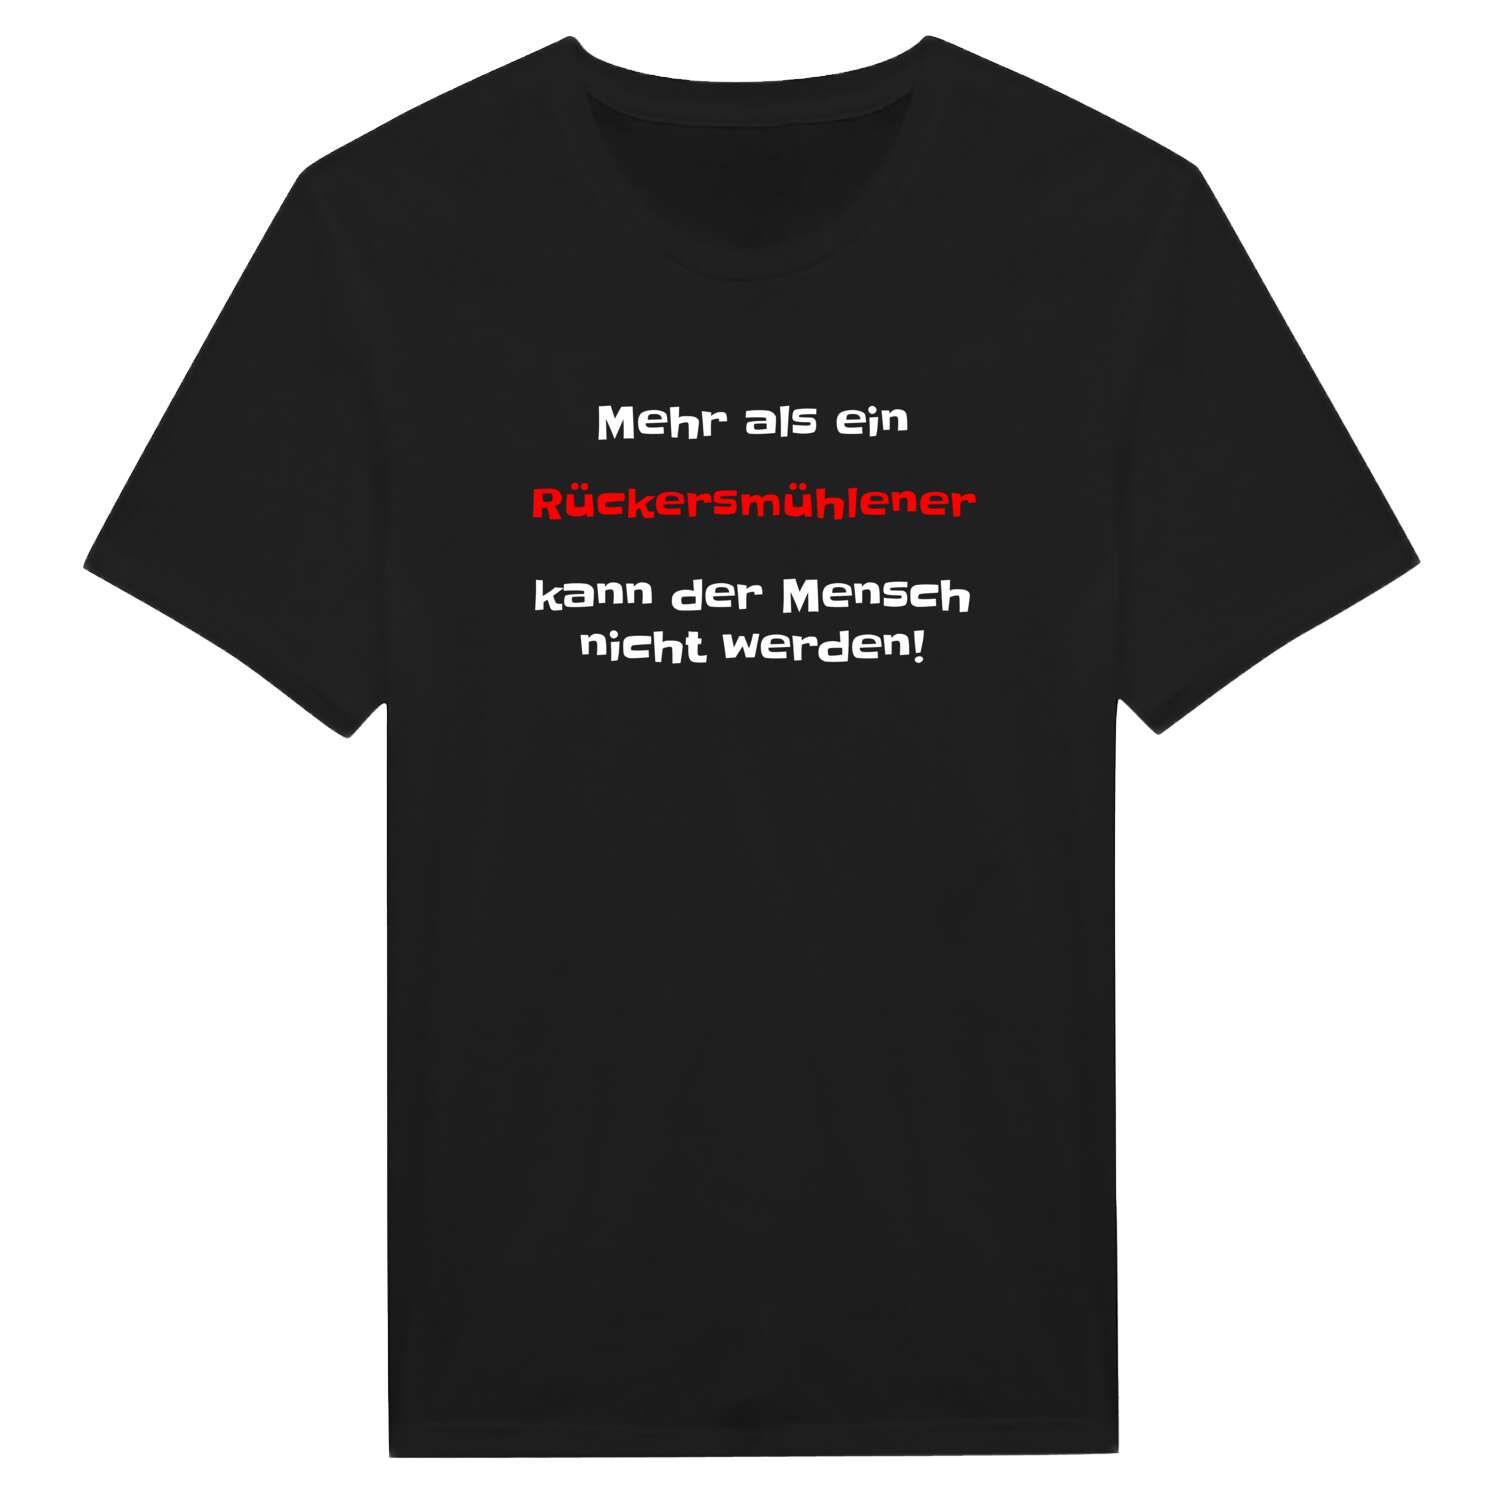 Rückersmühle T-Shirt »Mehr als ein«